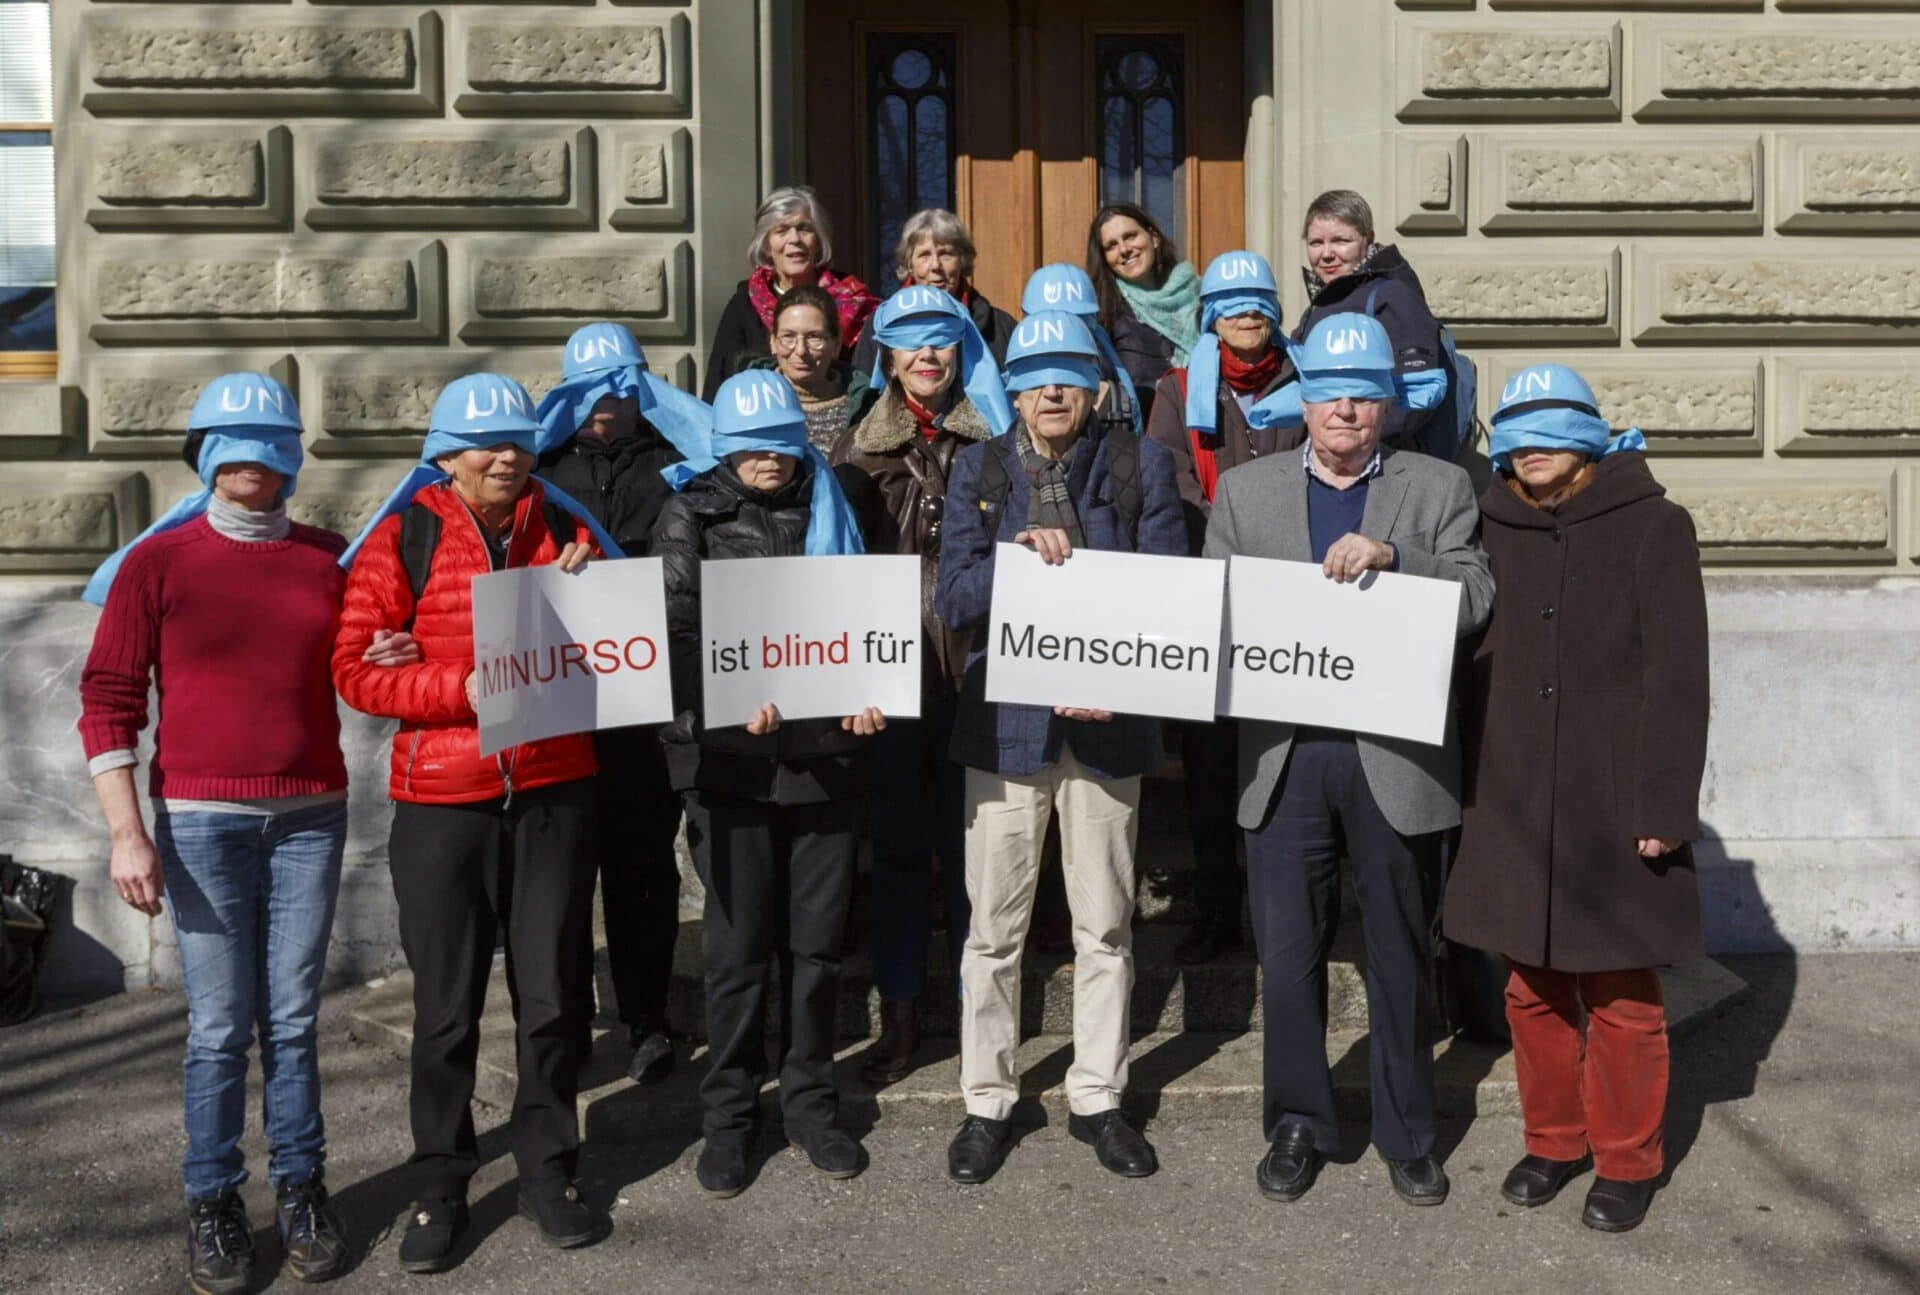 Menschen mit blauen Helmen die den Schriftzug UN tragen stehen zusammen für ein Gruppenbild vor der Bundeskanzlei.